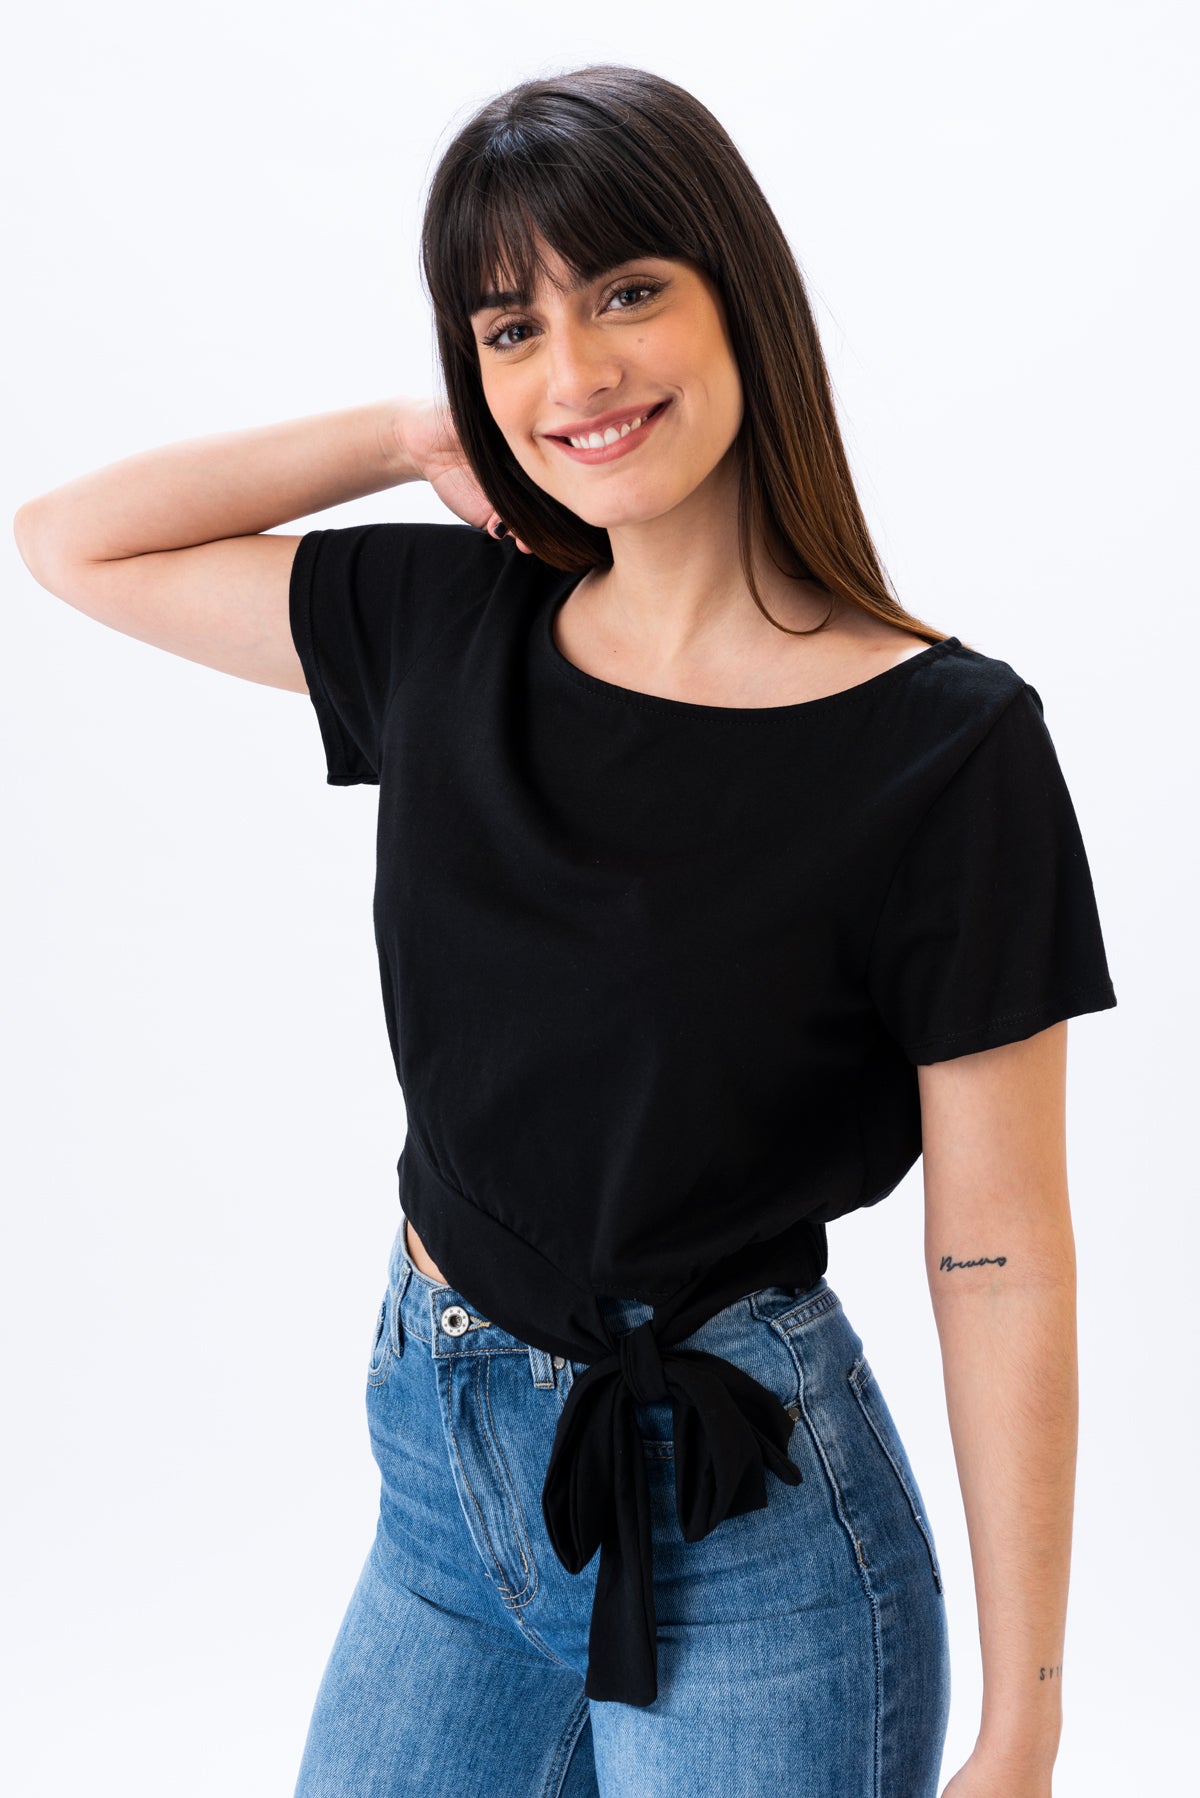 Remera Nodo - Negra | Blusas, Camisas y Remeras | Viviana Méndez - Remera Nodo Negra - Viviana Méndez